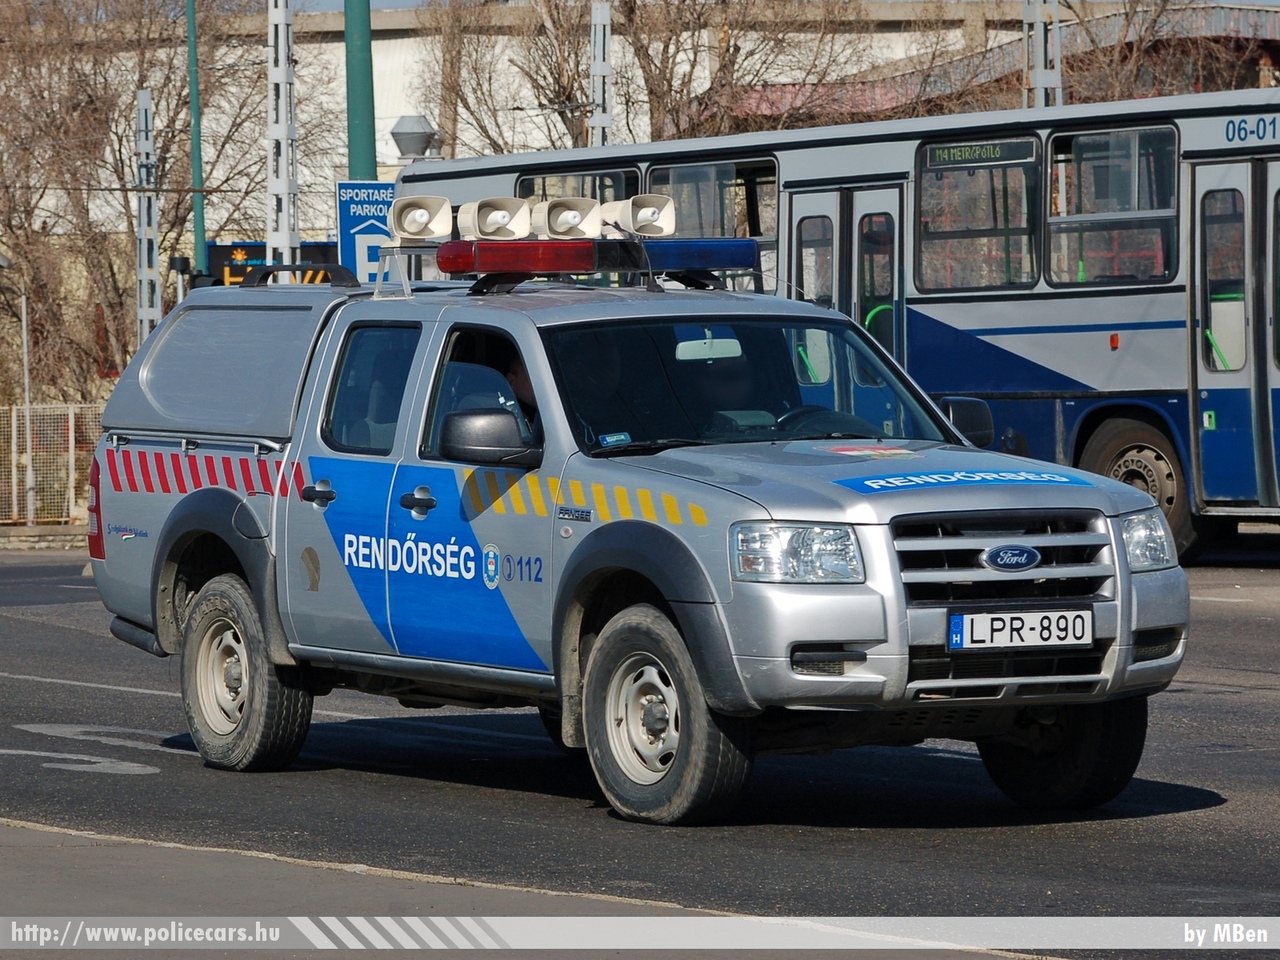 Ford Ranger, fotó: MBen
Keywords: rendőr rendőrautó rendőrség magyar Magyarország hungarian Hungary police policecar LPR-890